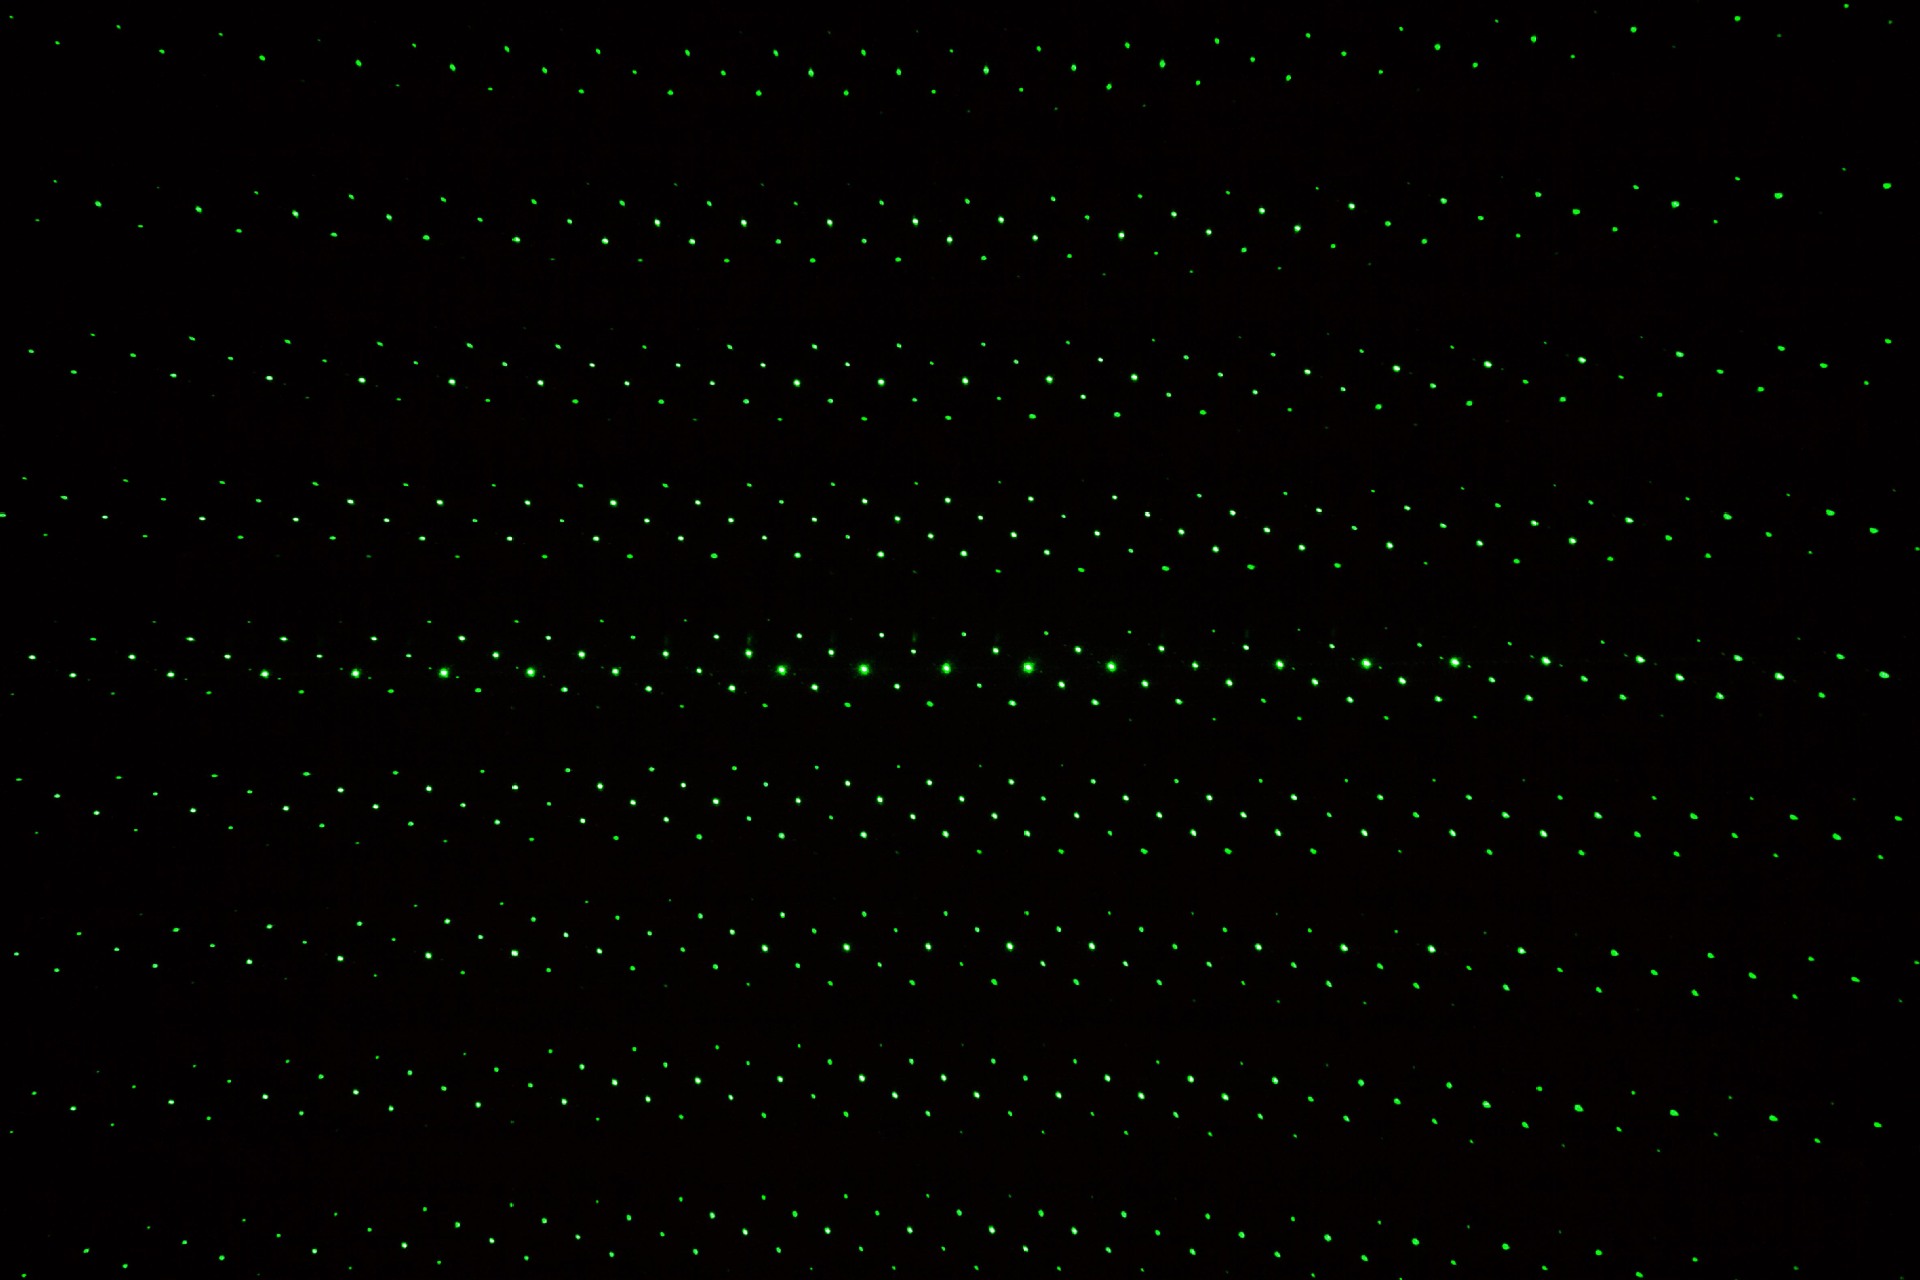 Pointeur laser vert 100mW